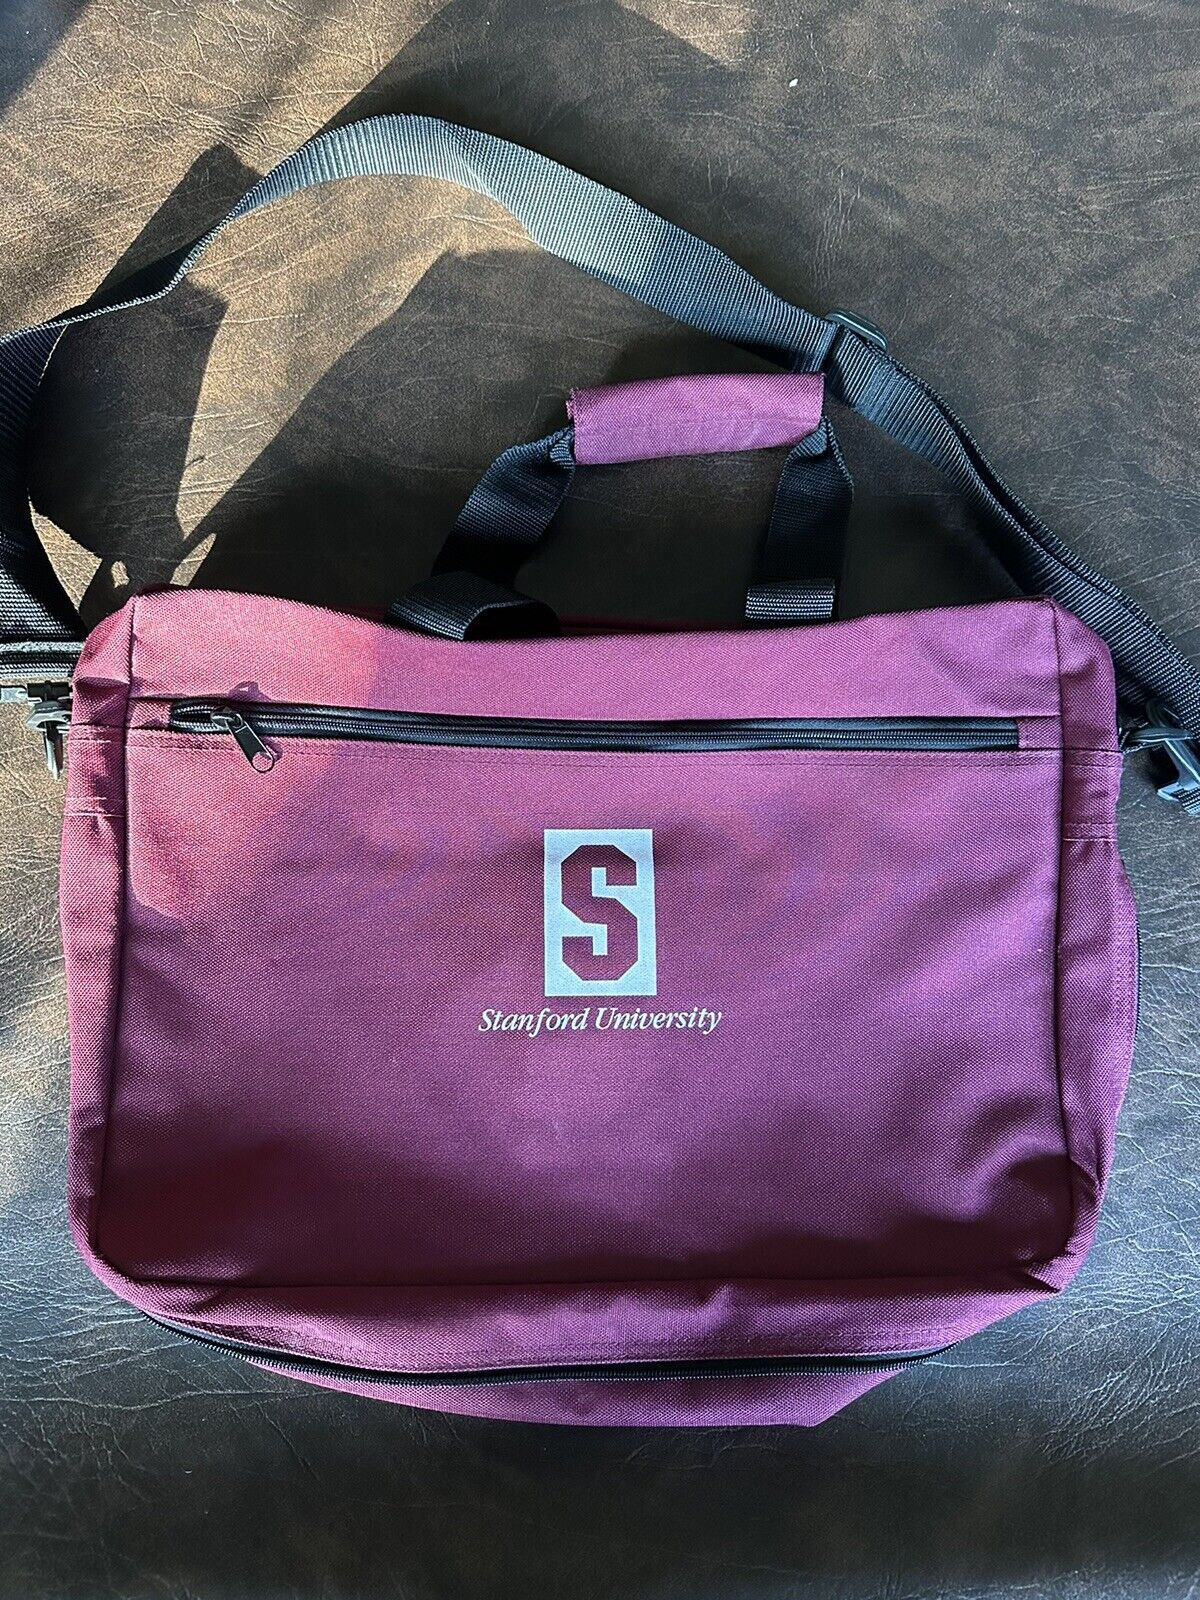 New Vintage Stanford University Laptop Bag With shoulder Strap Brand New